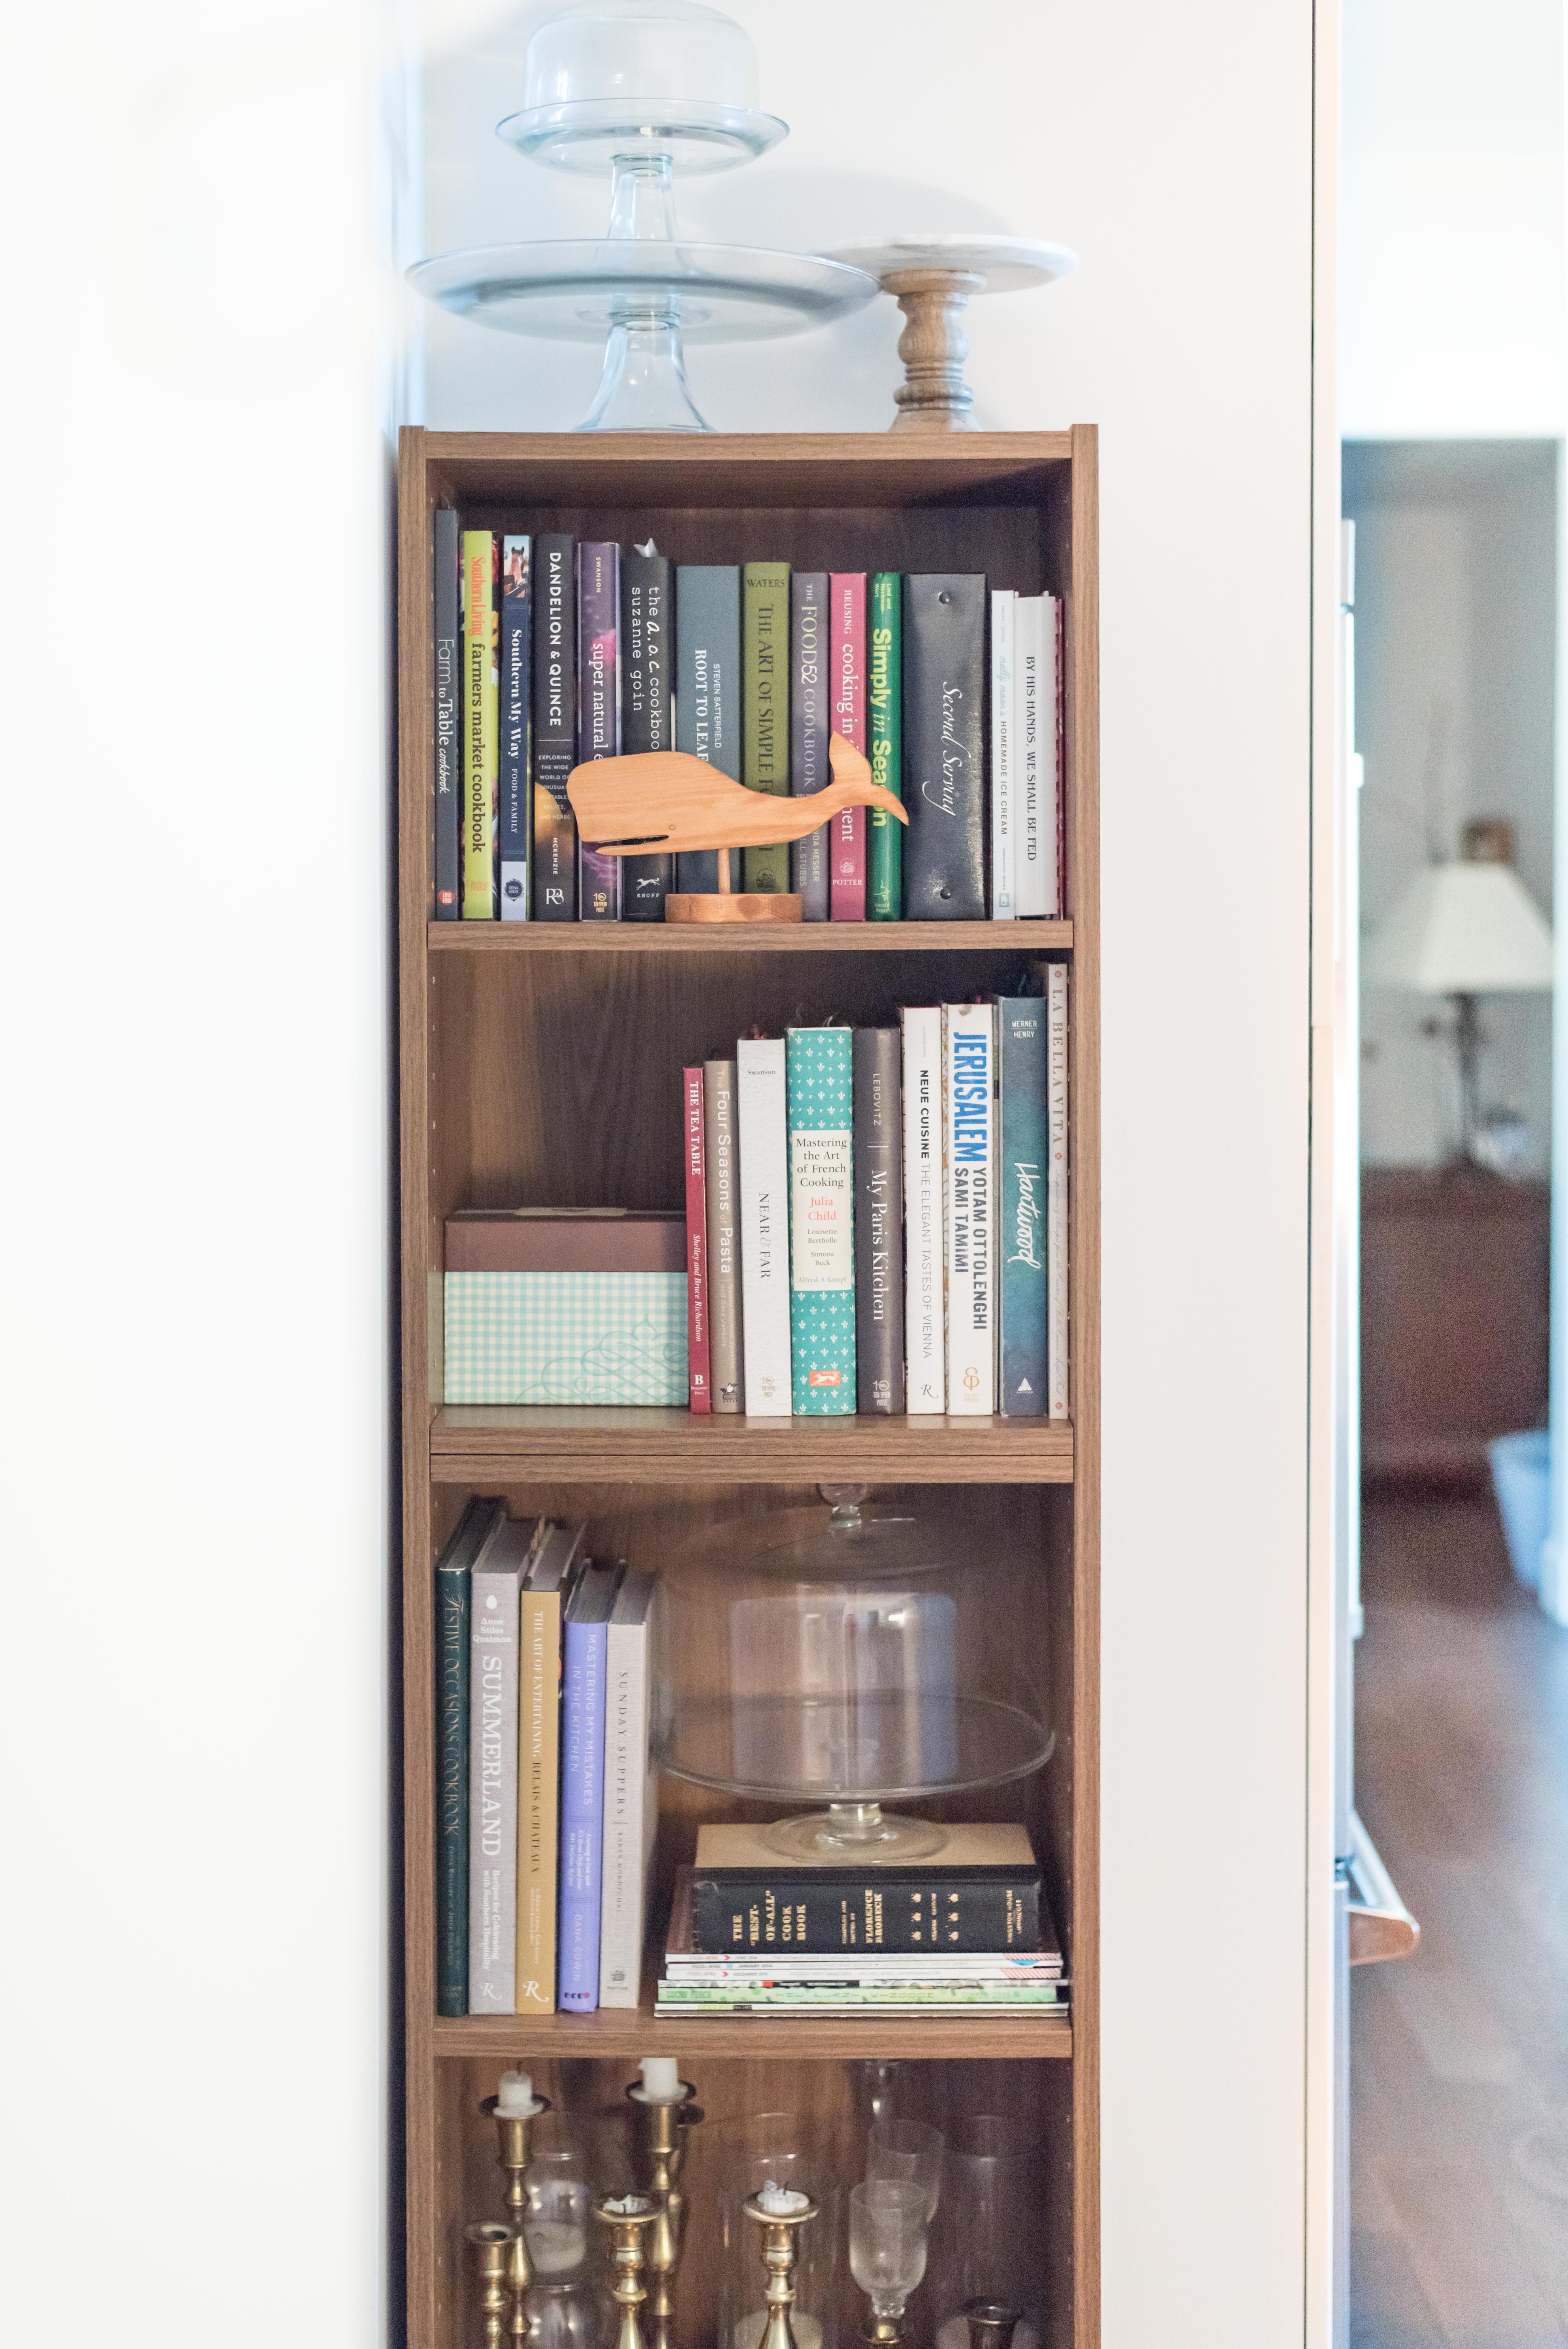 Cookbook shelf